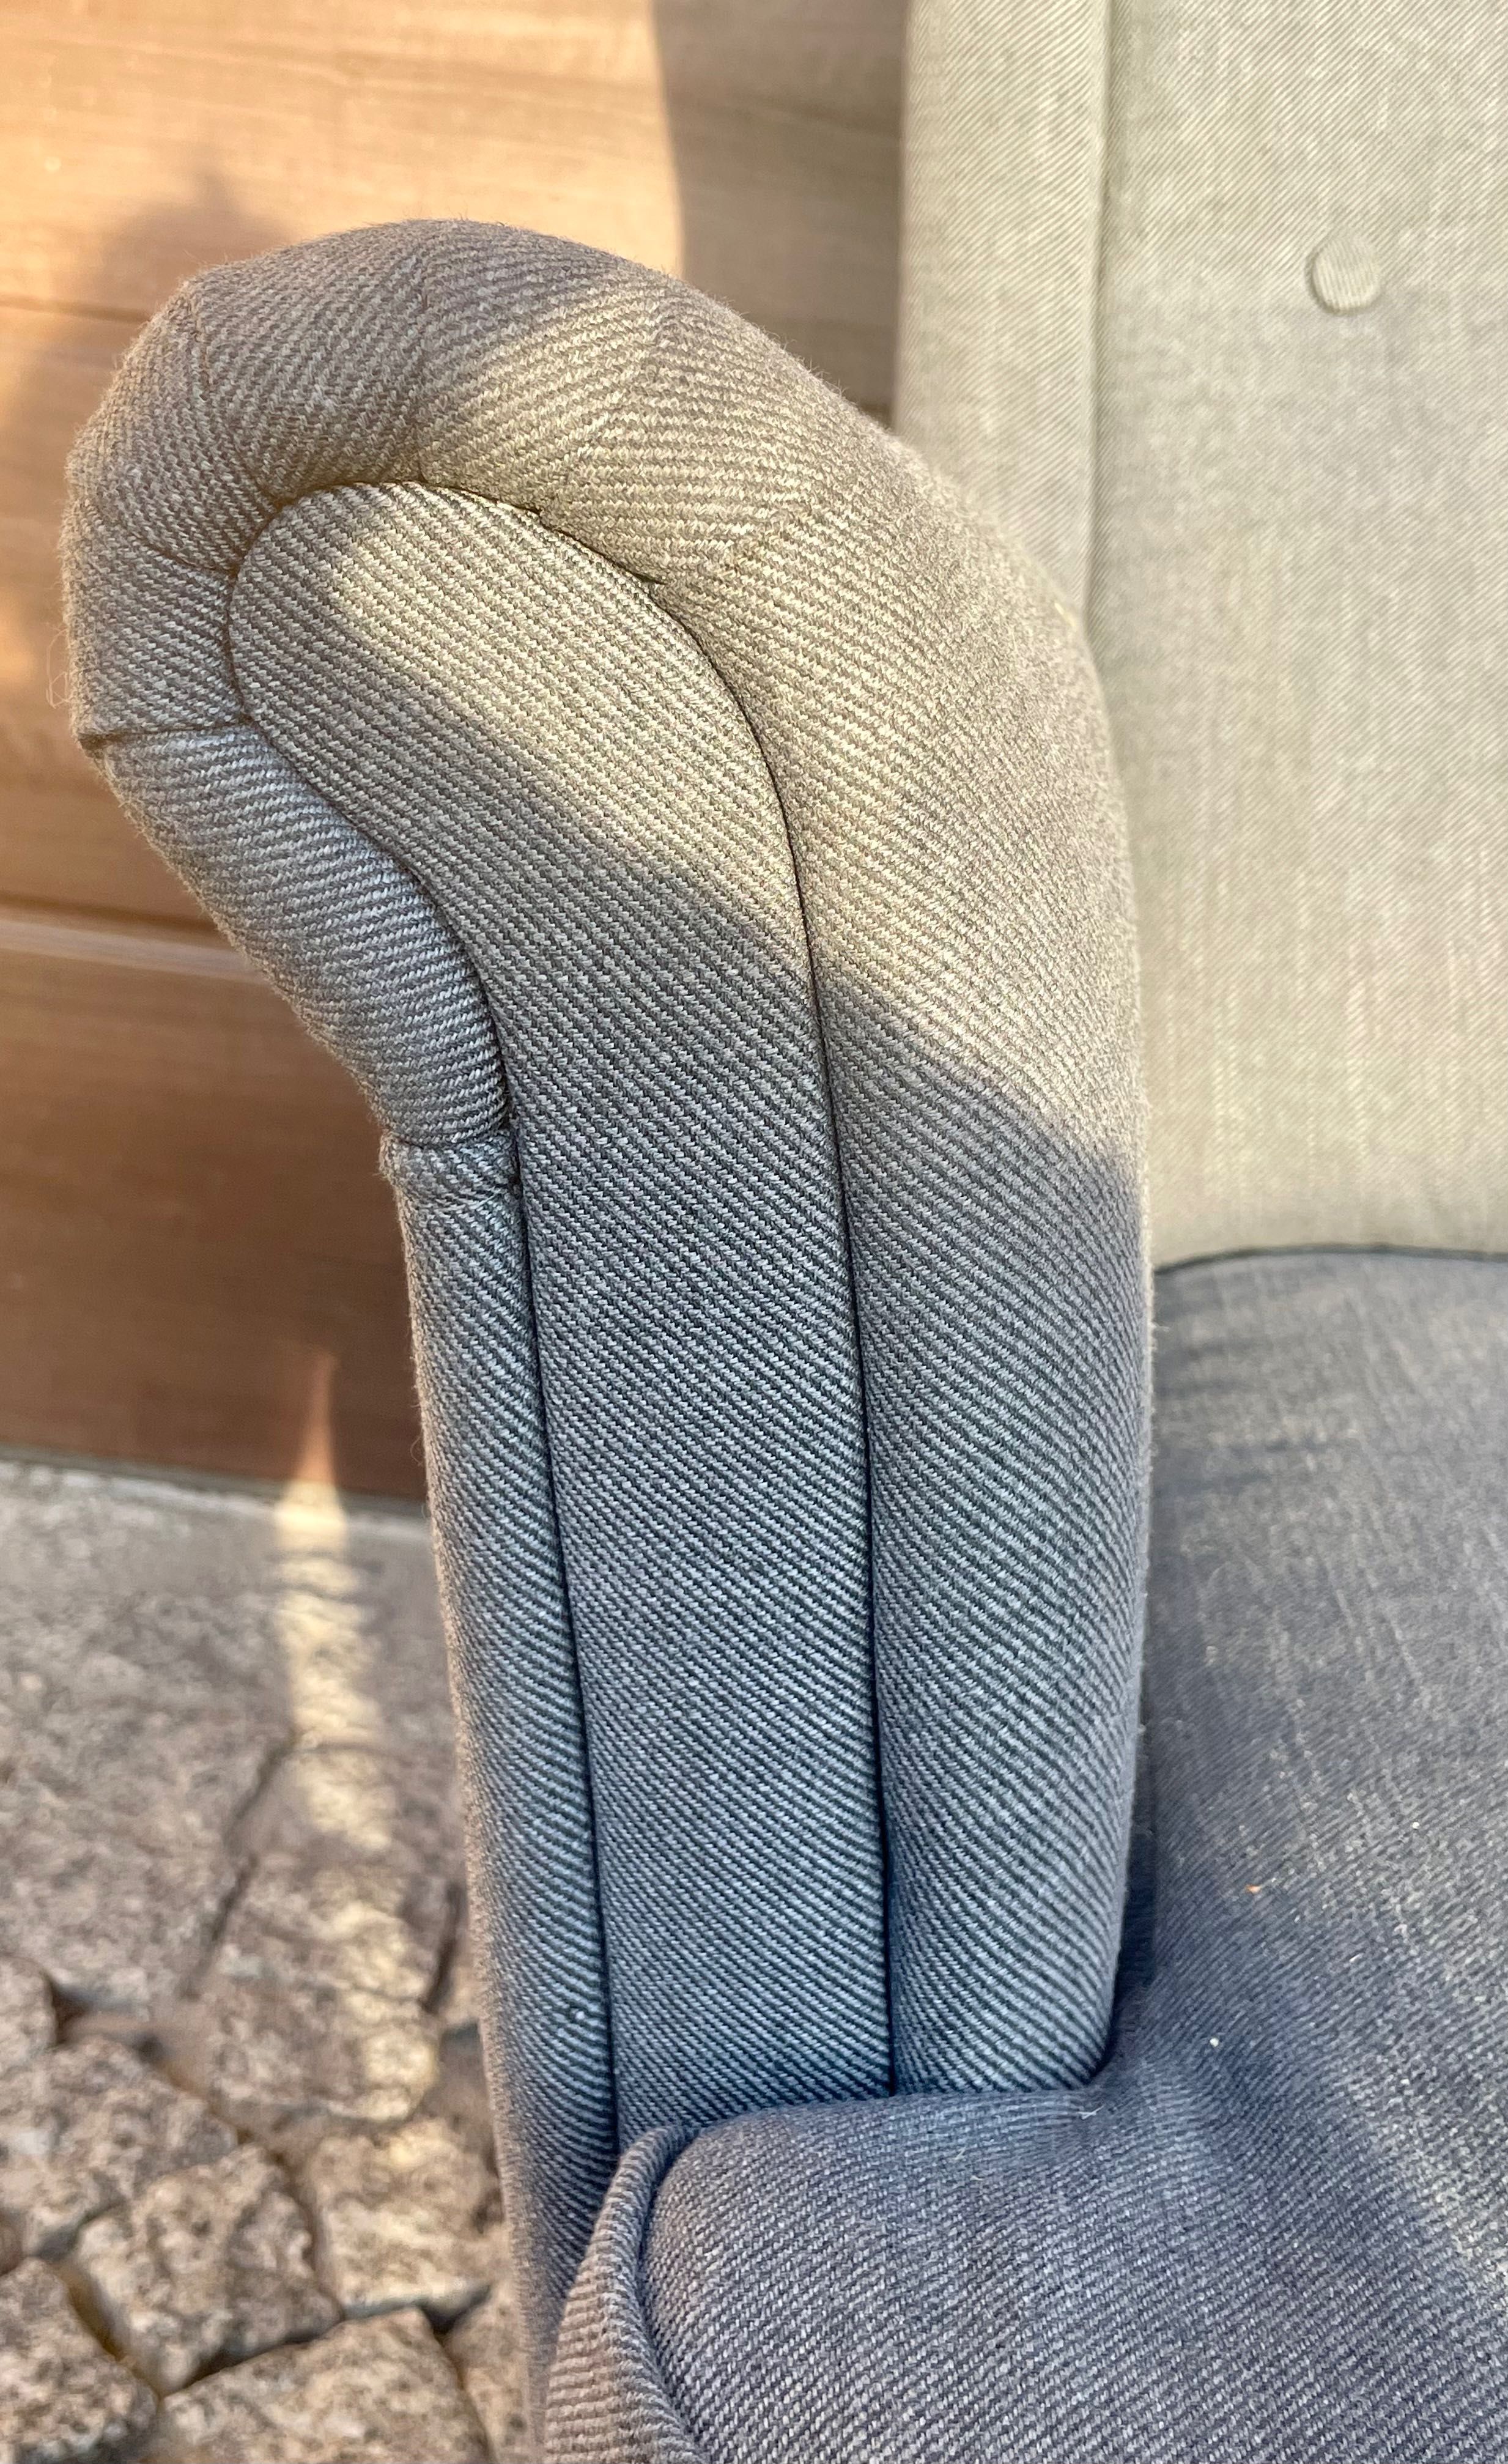 Kanapa /sofa Ikea STRANDMON